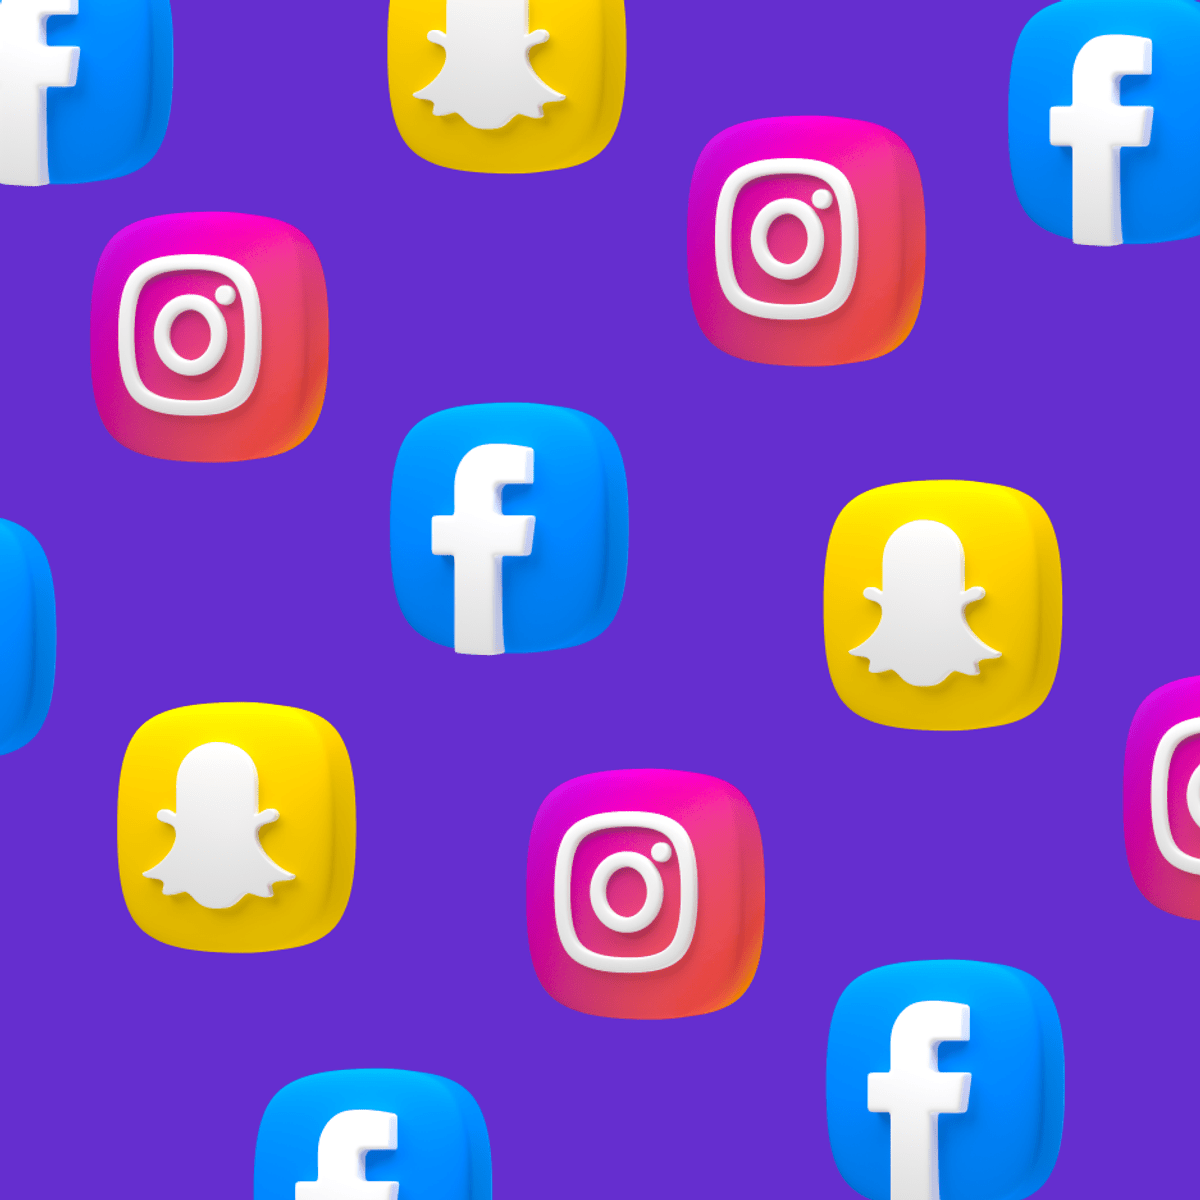 Snapchat, login, Instagram, Social media, Facebook, , MARKETING,  blog, logos, advertising